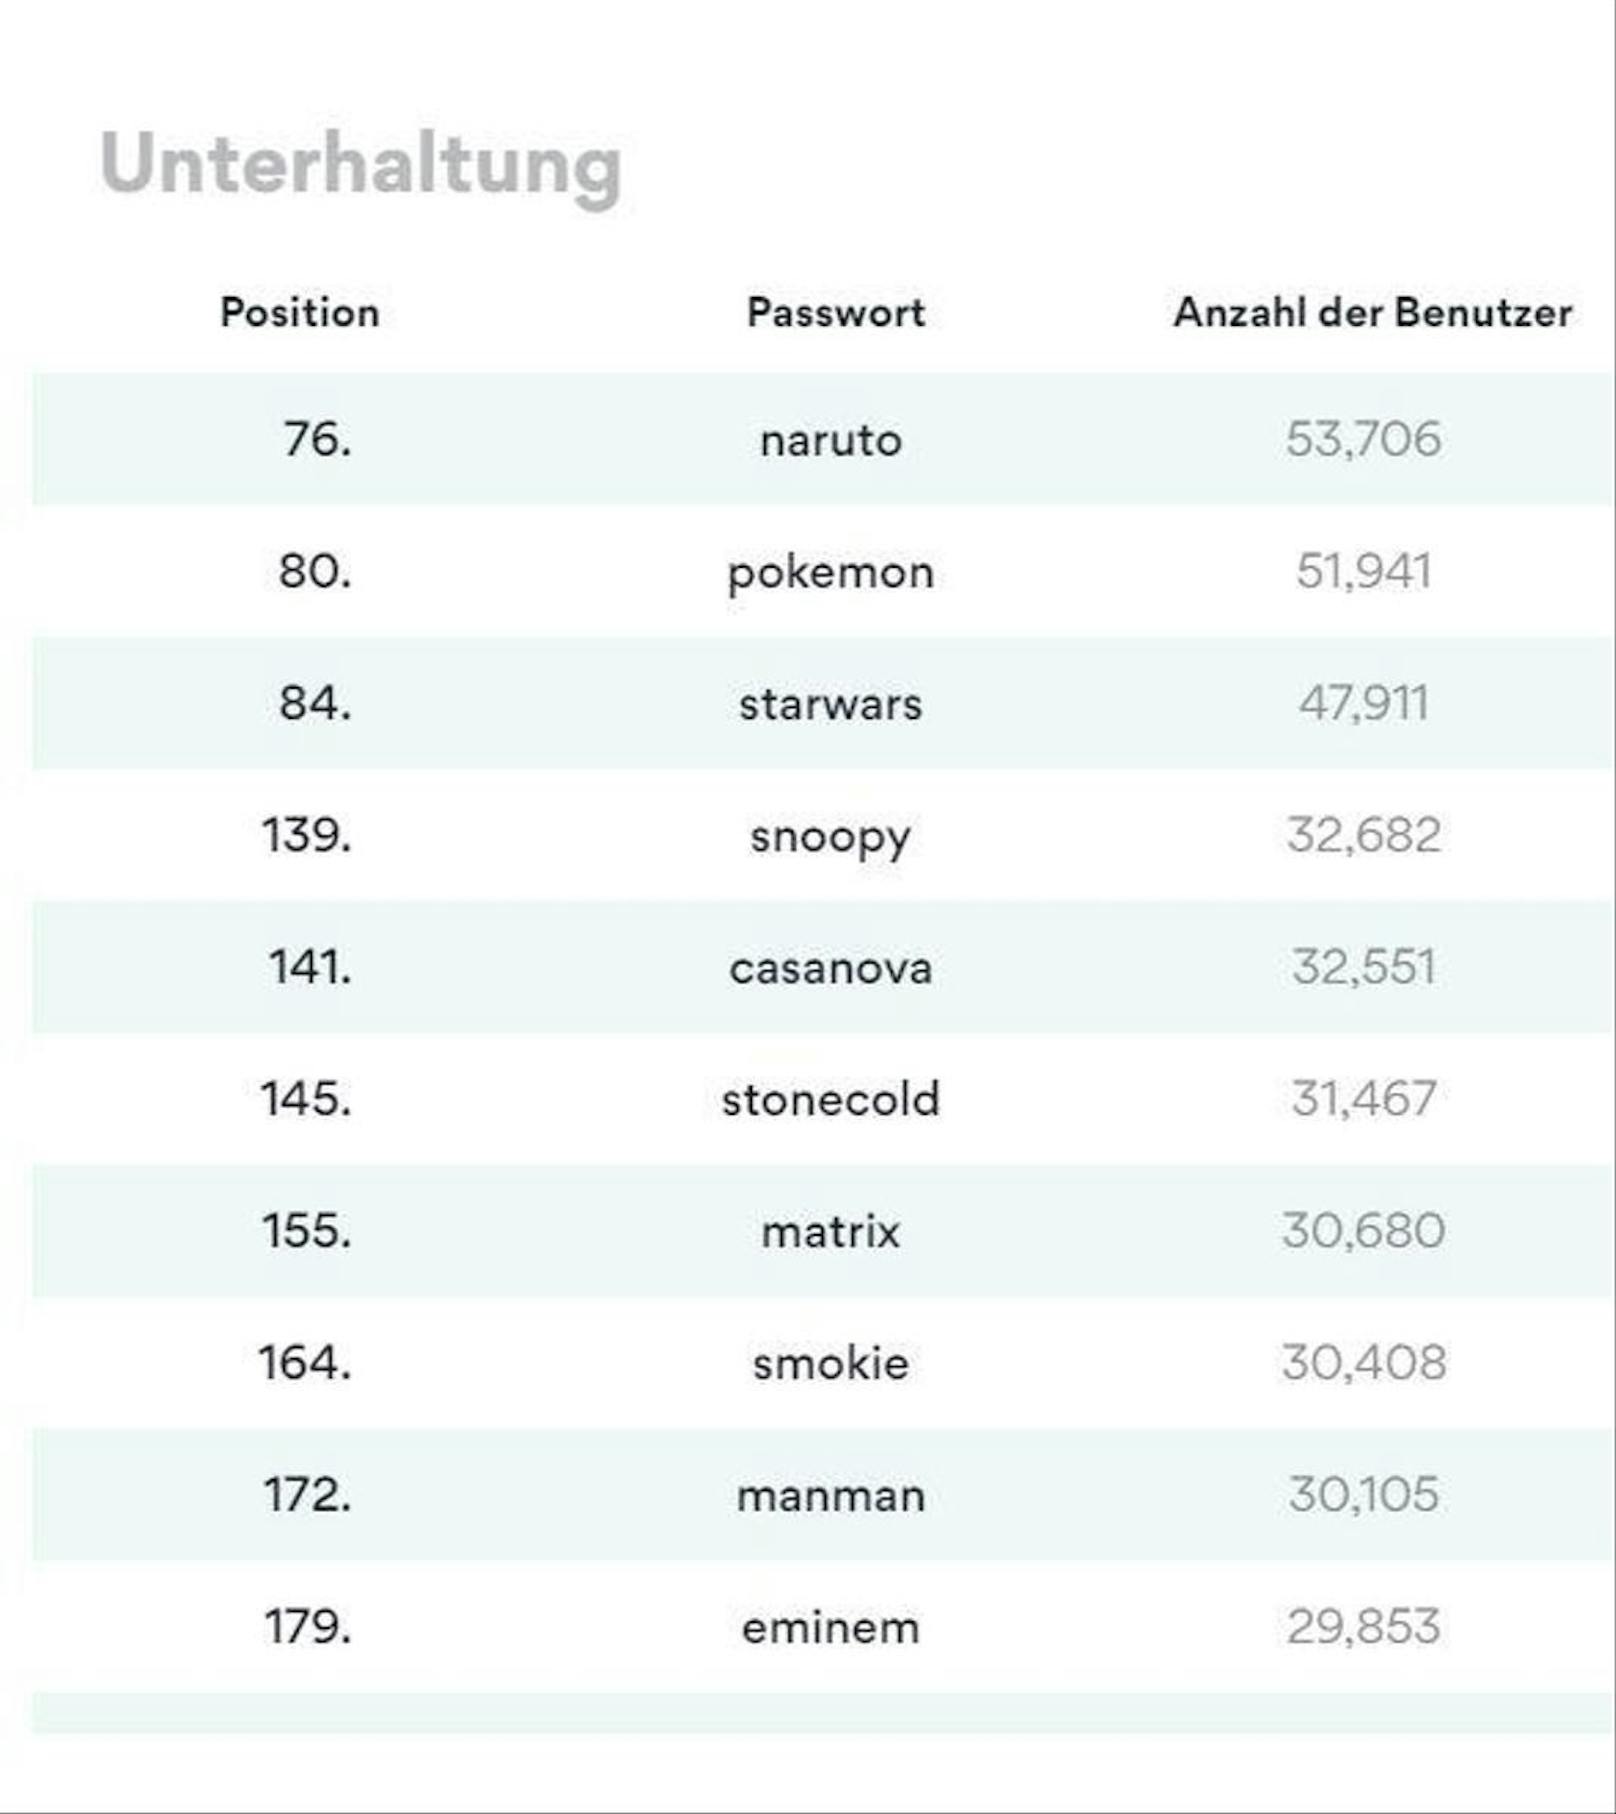 "naruto", "pokemon" und "starwars" sind ebenfalls beliebte Passwörter.